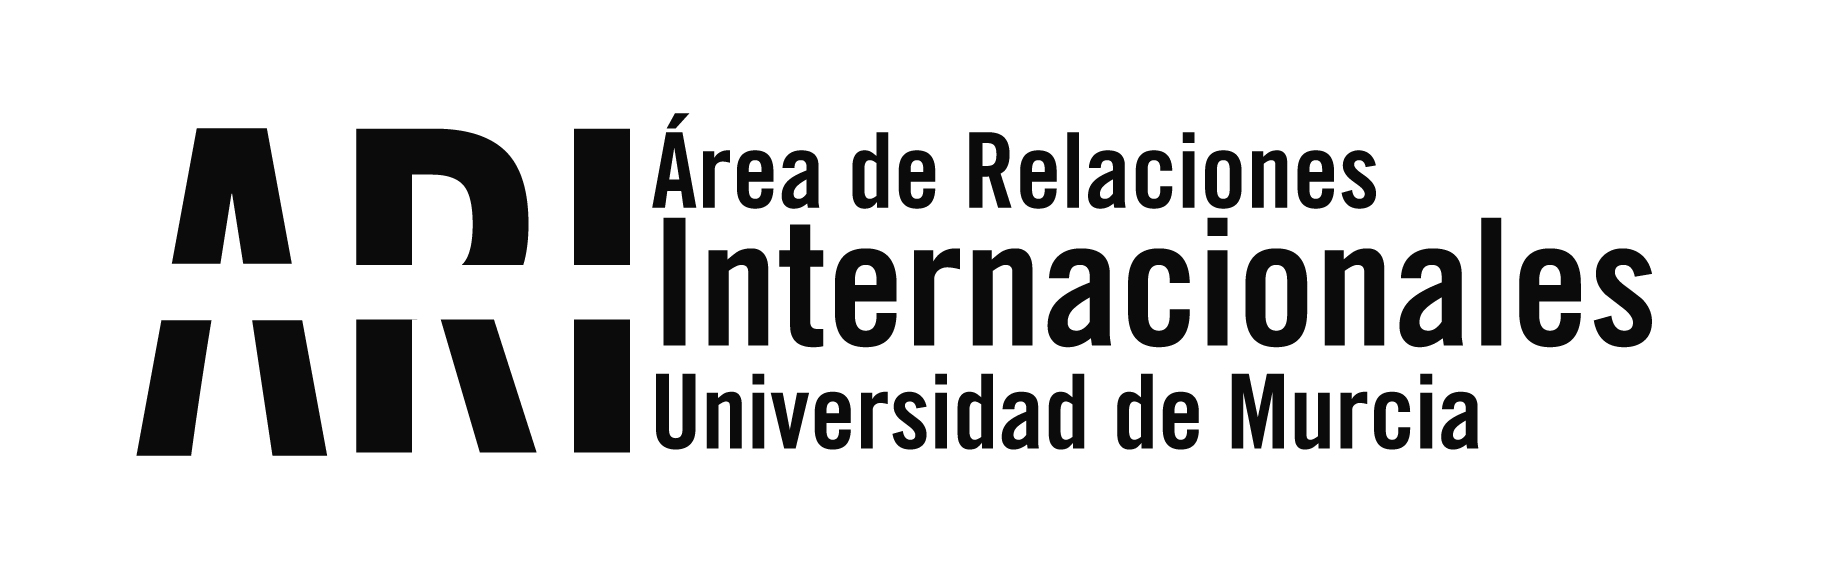 Universidades chinas envían material sanitario al Hospital Universitario Arrixaca de Murcia - Área de Relaciones Internacionales